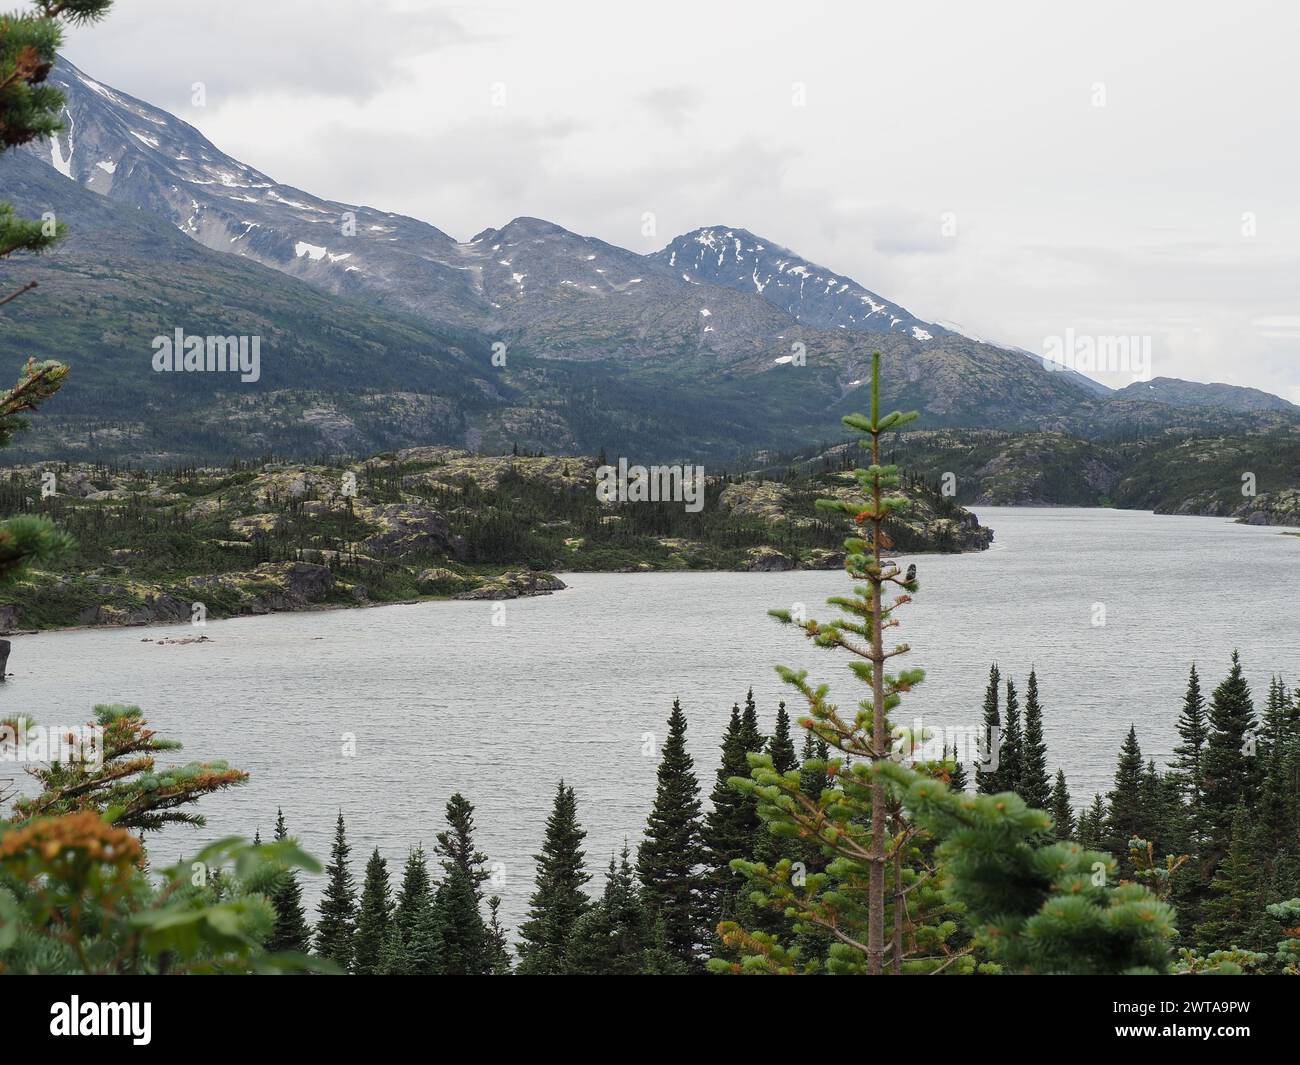 Auf dem Weg nach Skagway, Alaska, entfaltet sich die raue Schönheit mit majestätischen Bergen, üppigen Evergreens und einem ruhigen Wasserweg inmitten von rauem Gelände Stockfoto